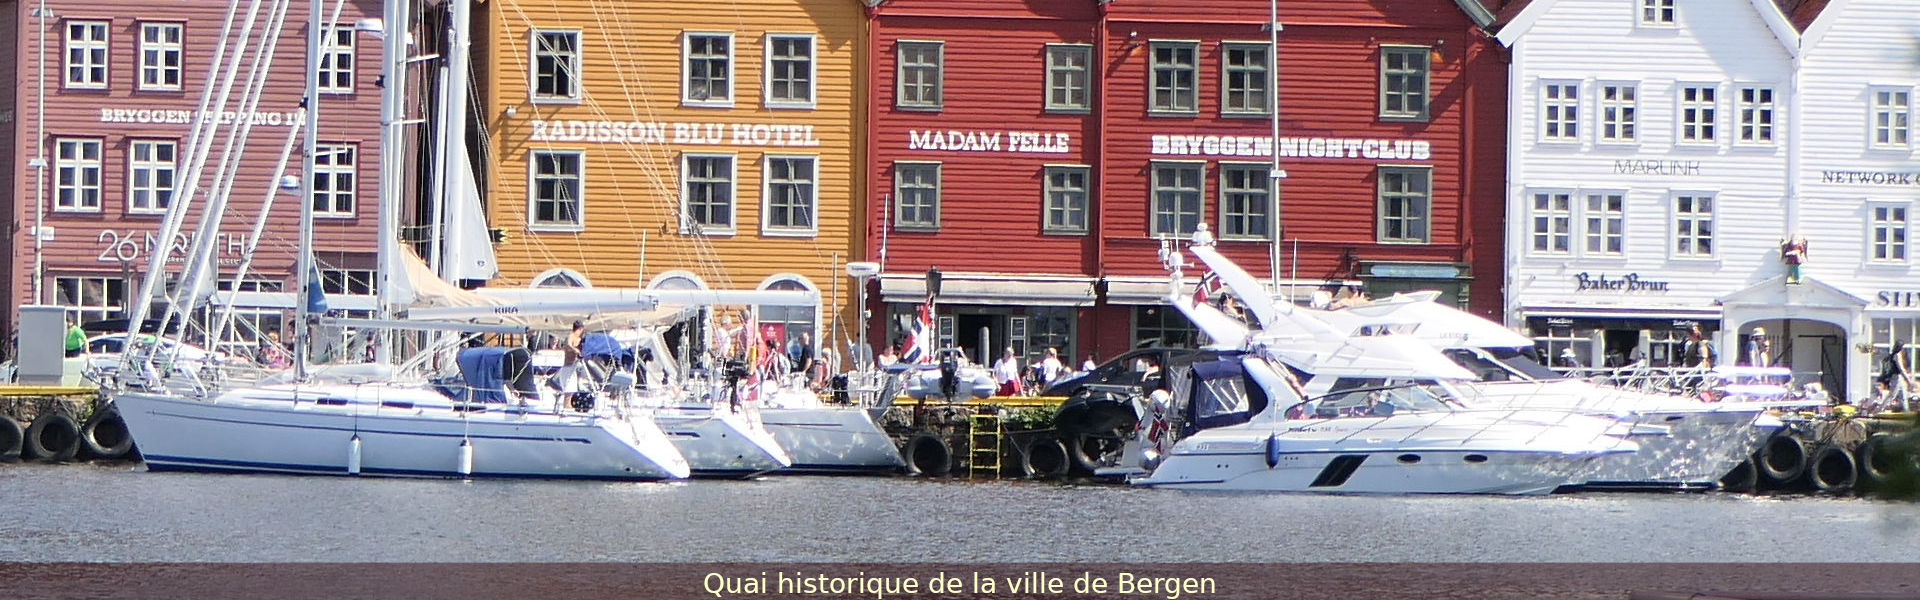 Quai historique de la ville de Bergen, Norvège.